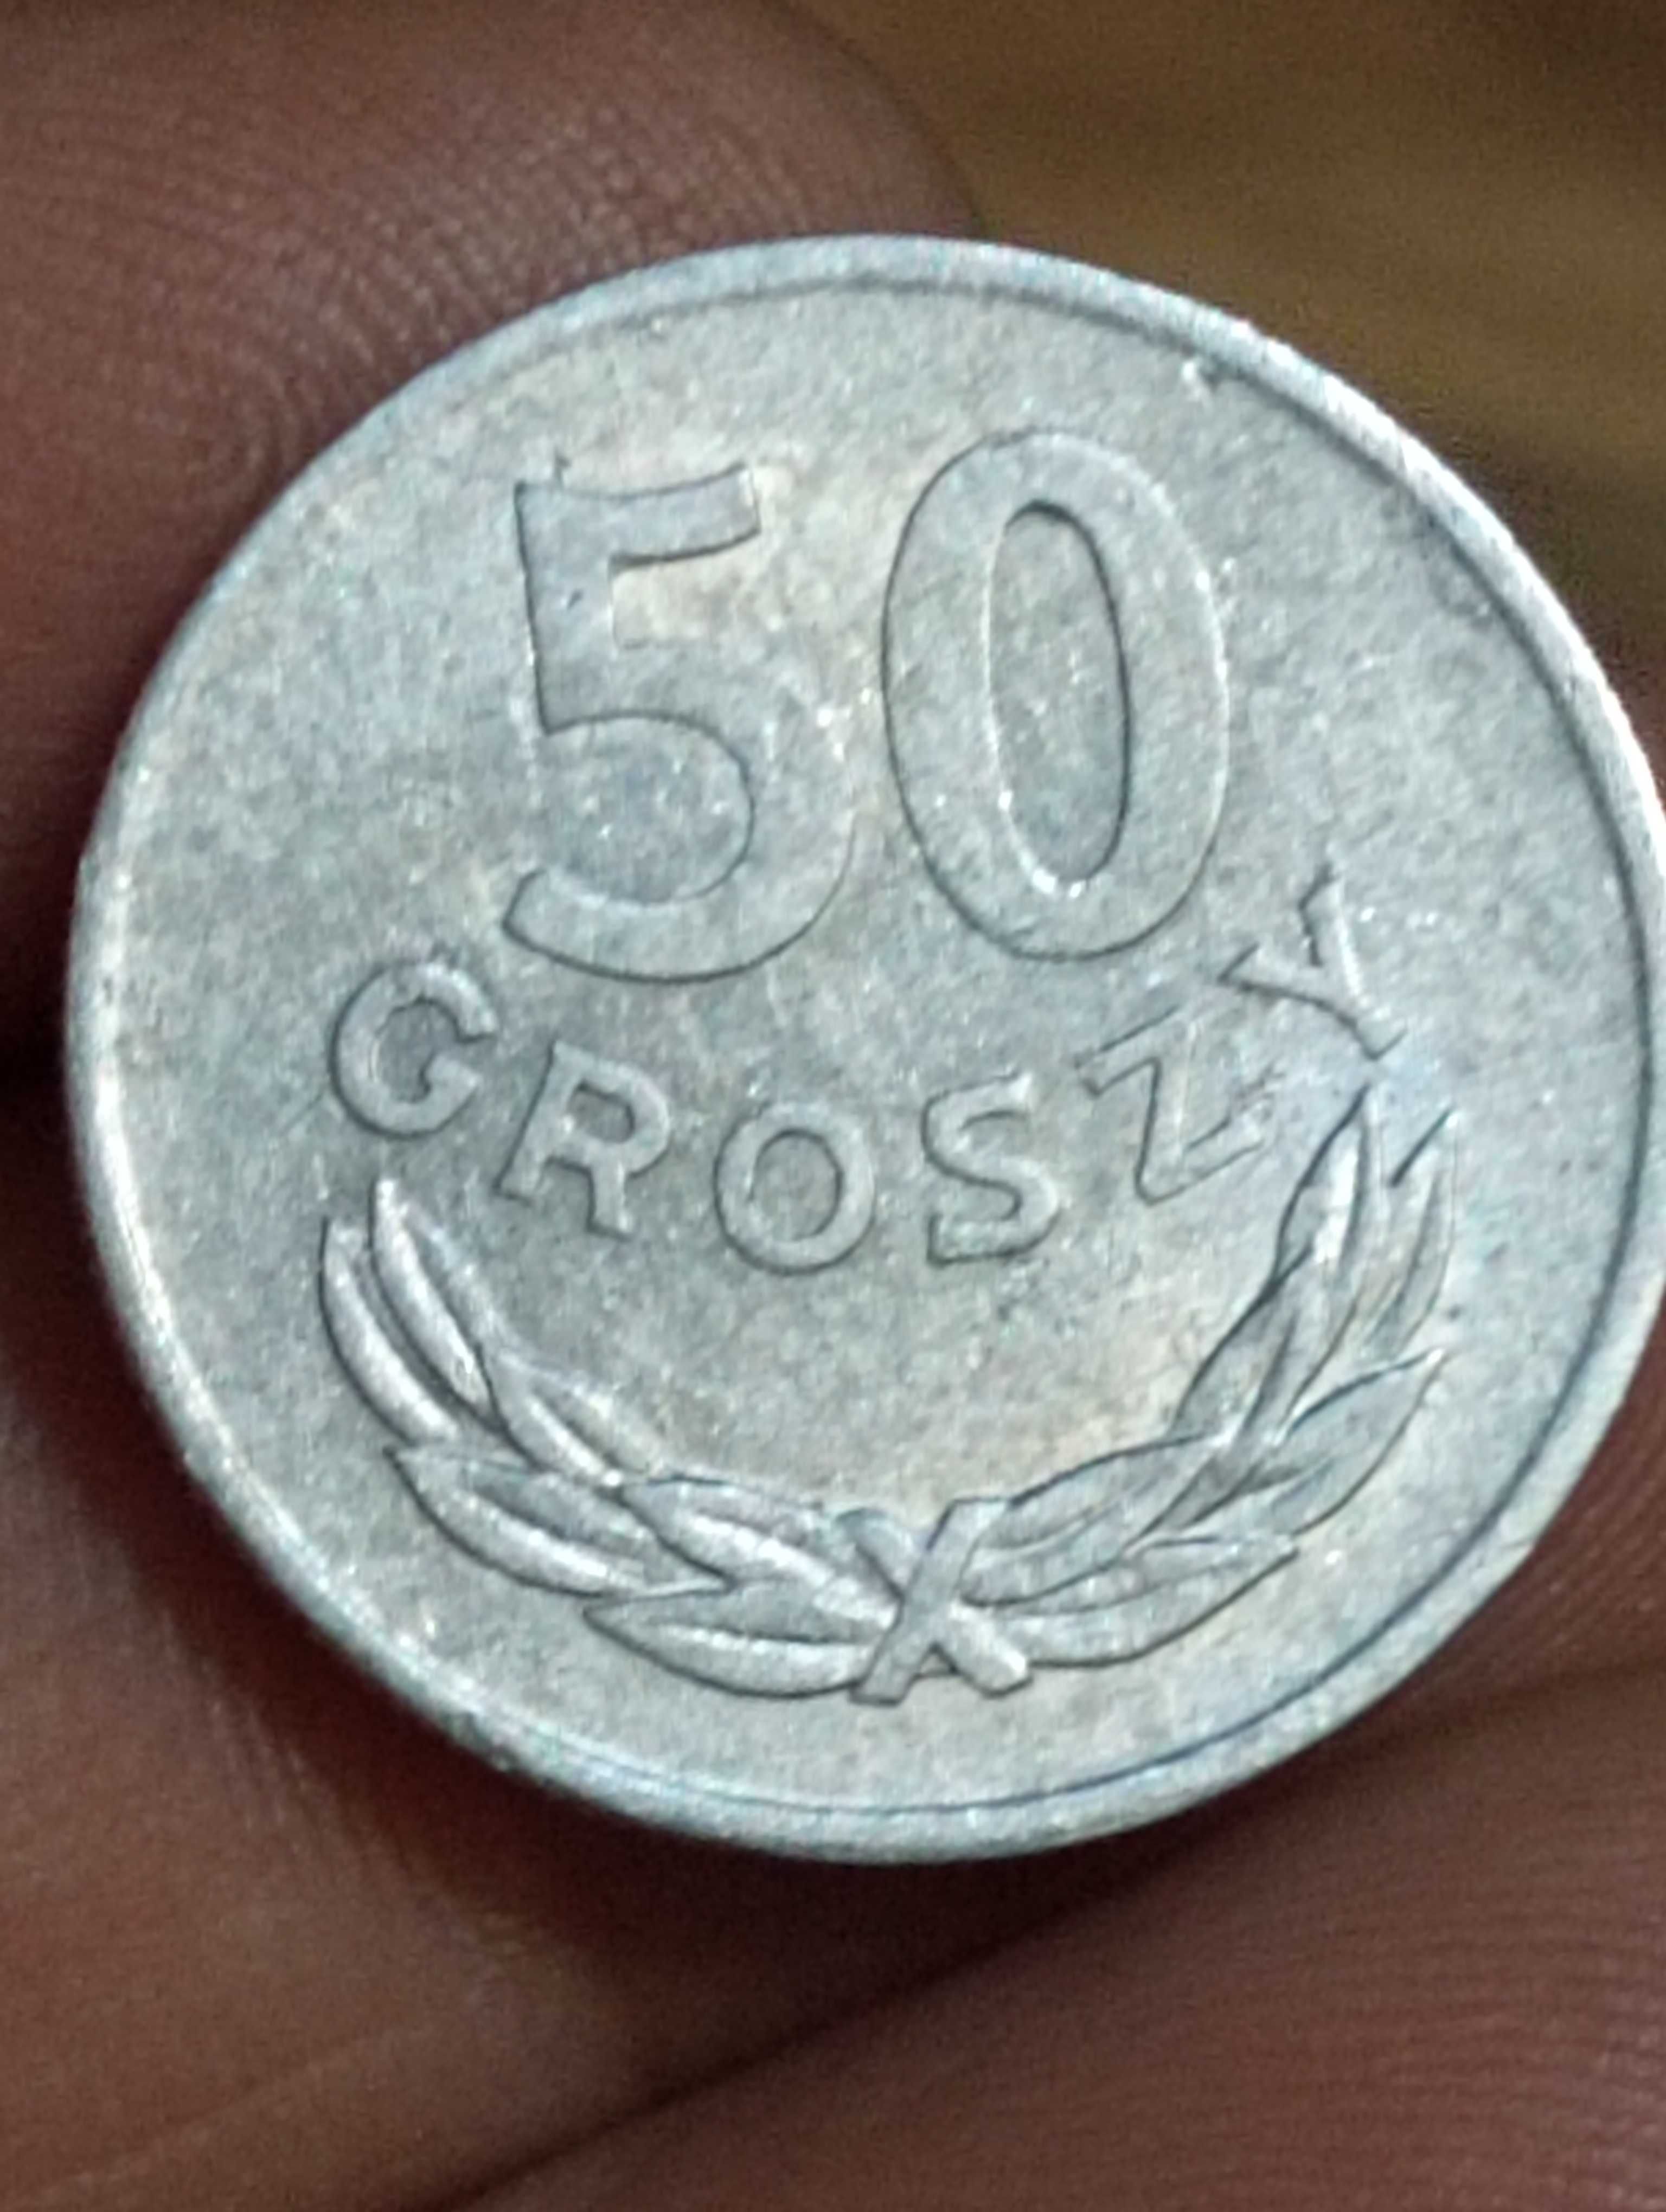 Sprzedam monete 50 groszy 1973 rok zzm